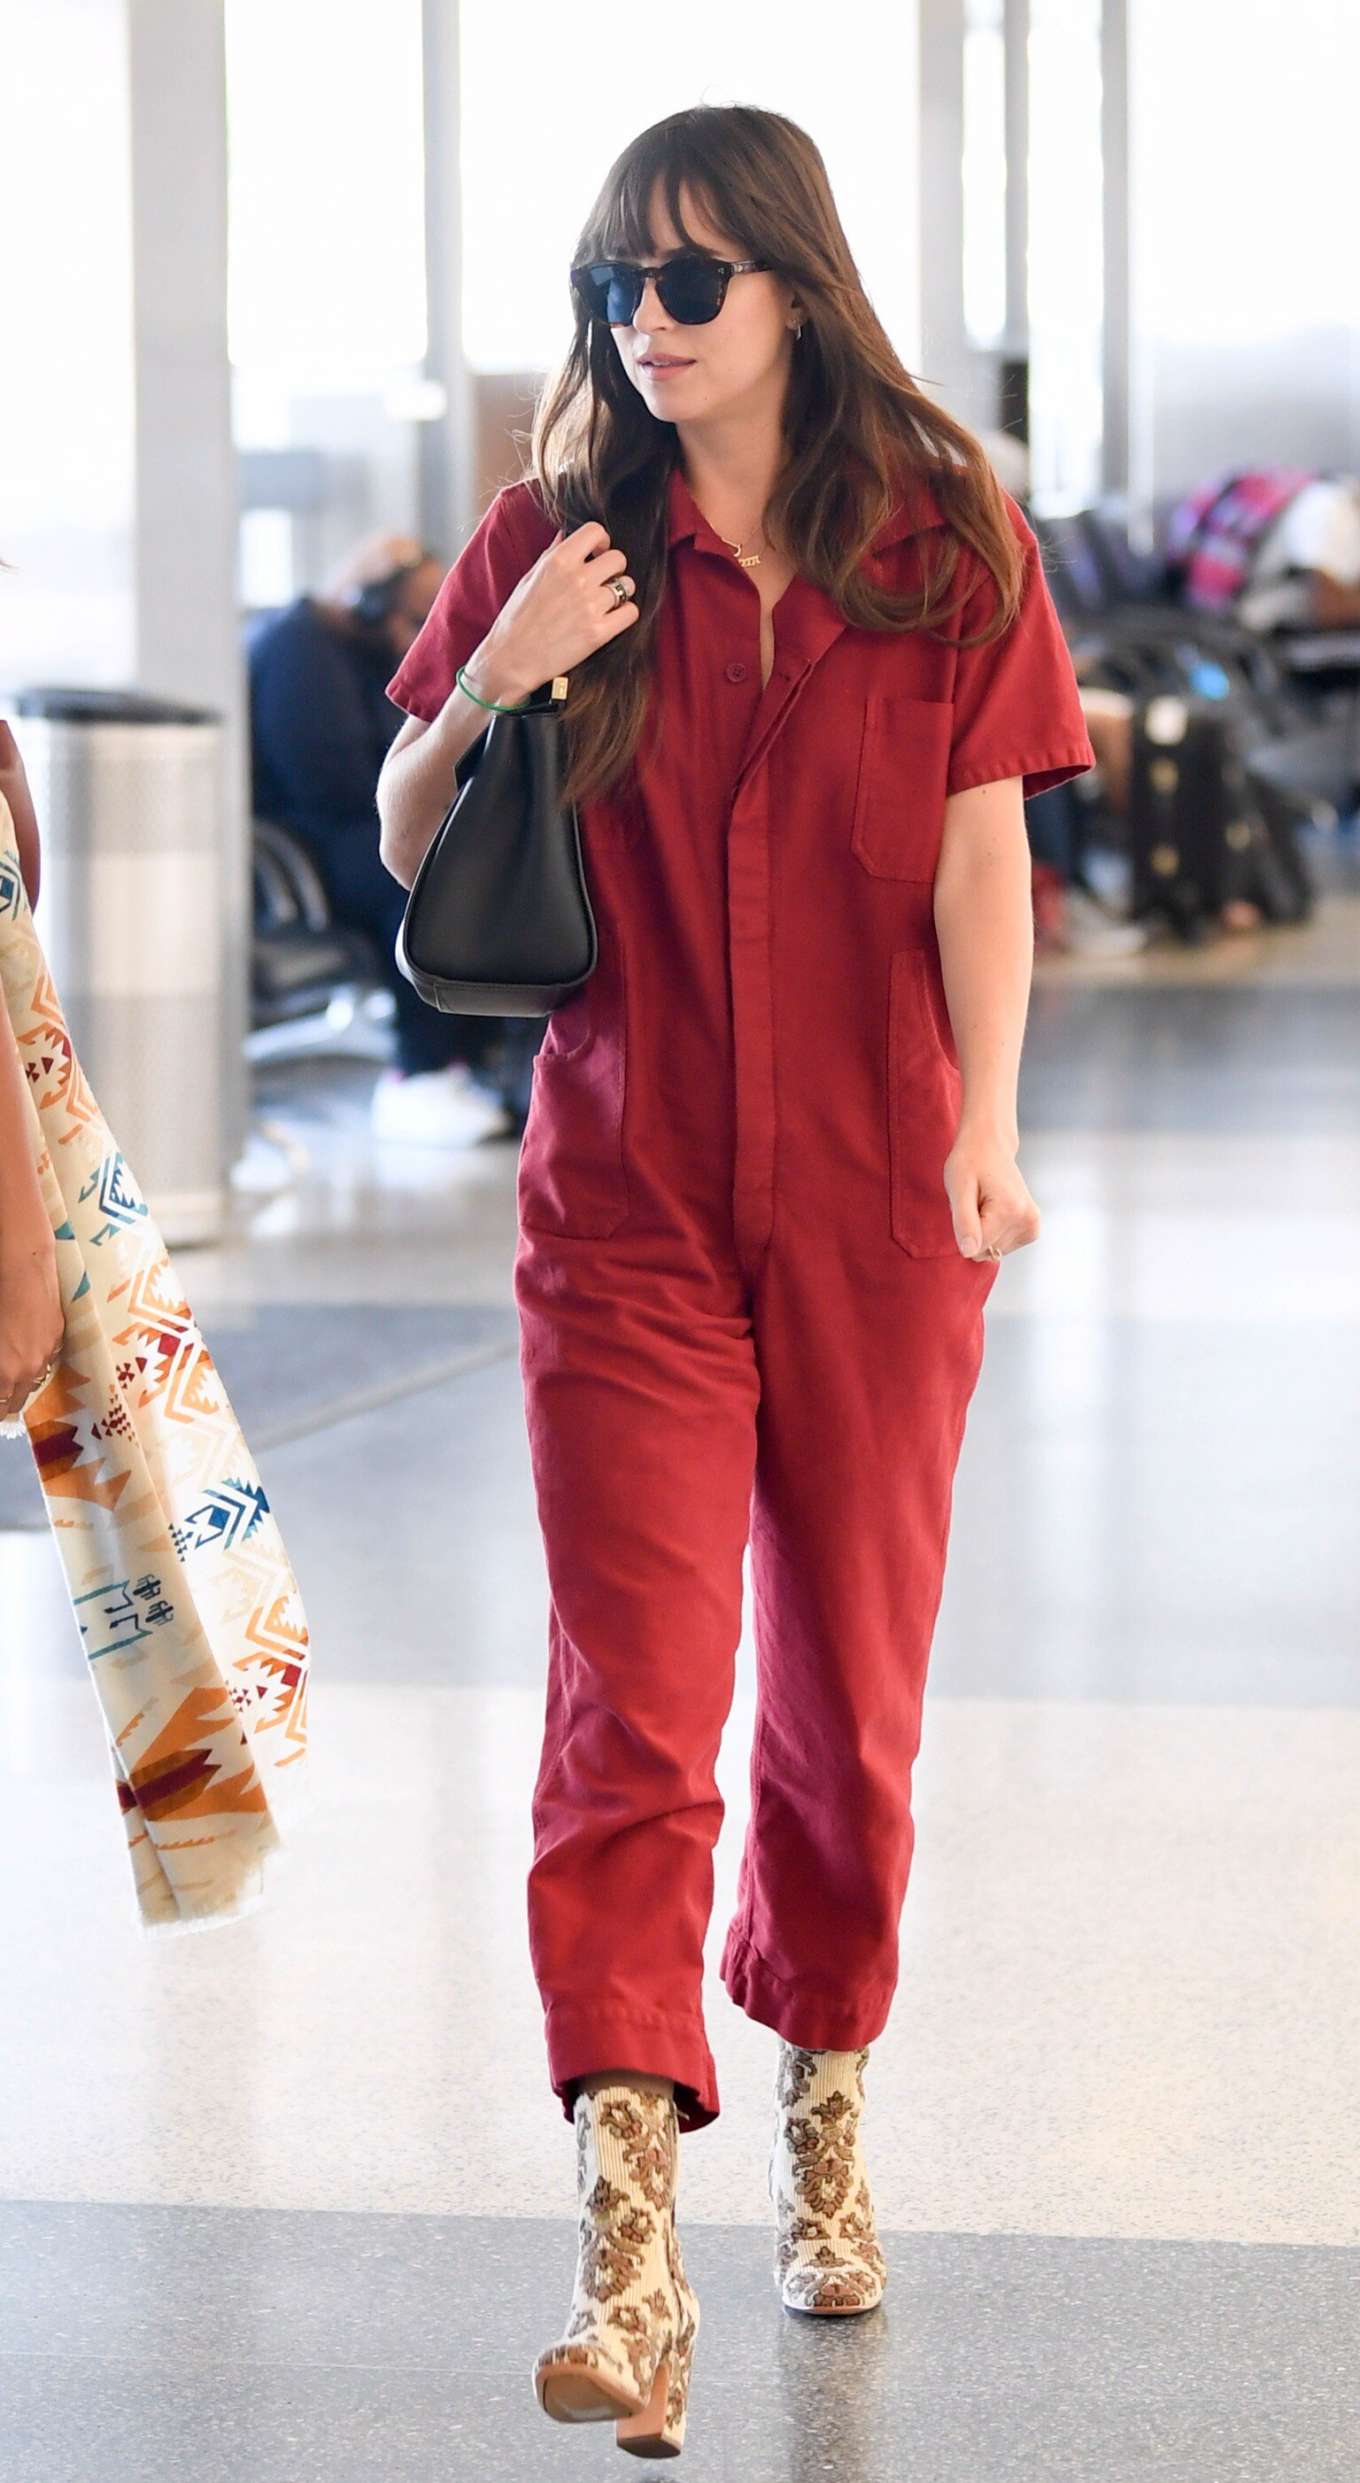 Dakota Johnson 2019 : Dakota Johnson in Red Jumpsuit-16